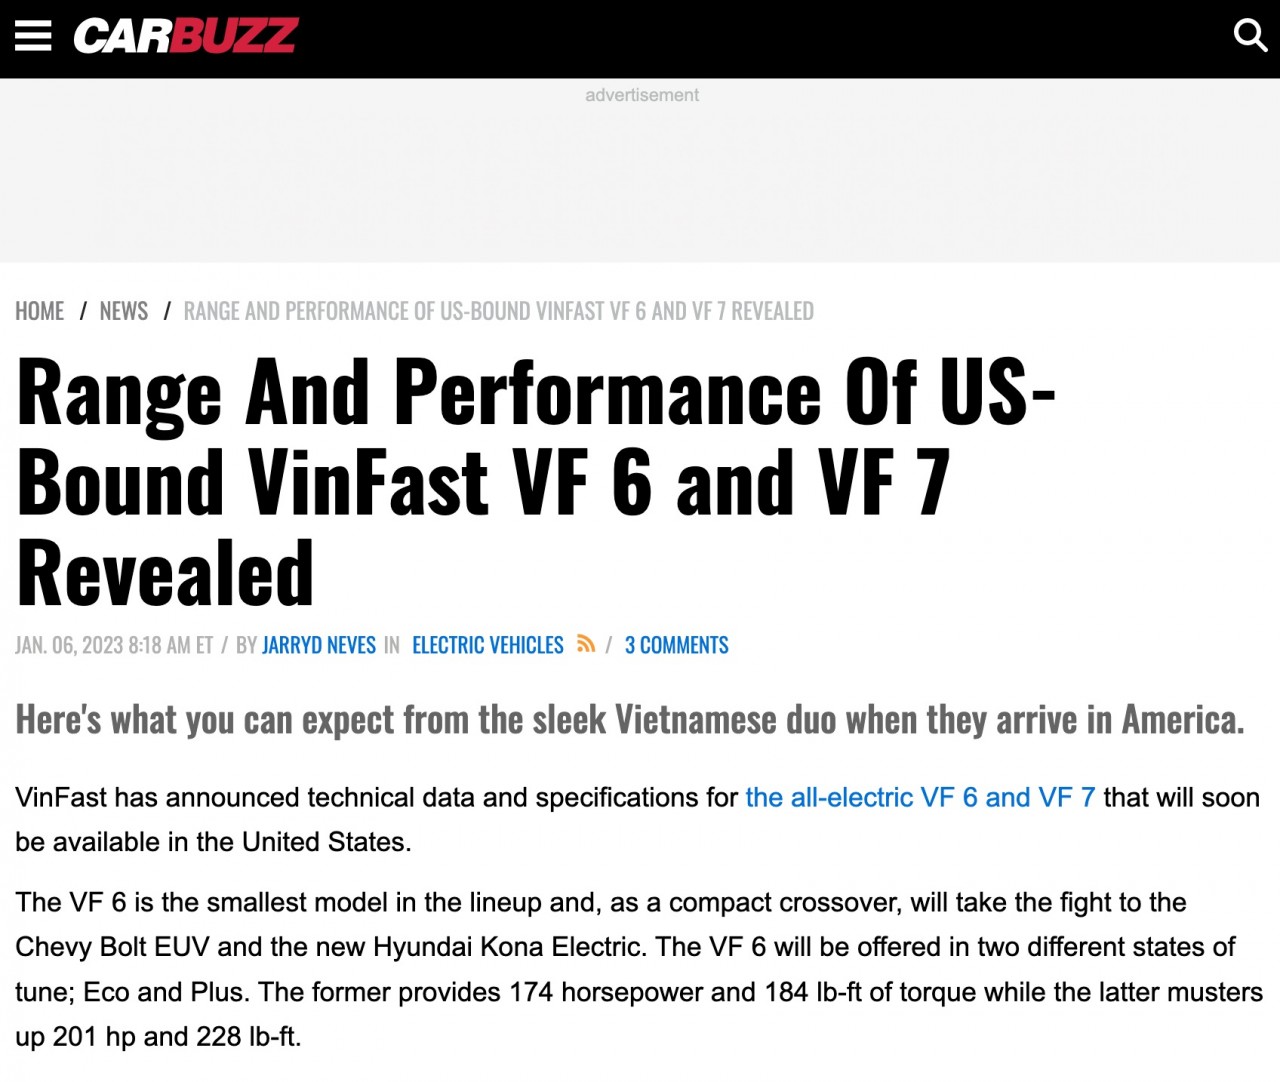 Xe điện VinFast VF6, VF7 nhận nhiều lời khen của truyền thông quốc tế tại CES 2023